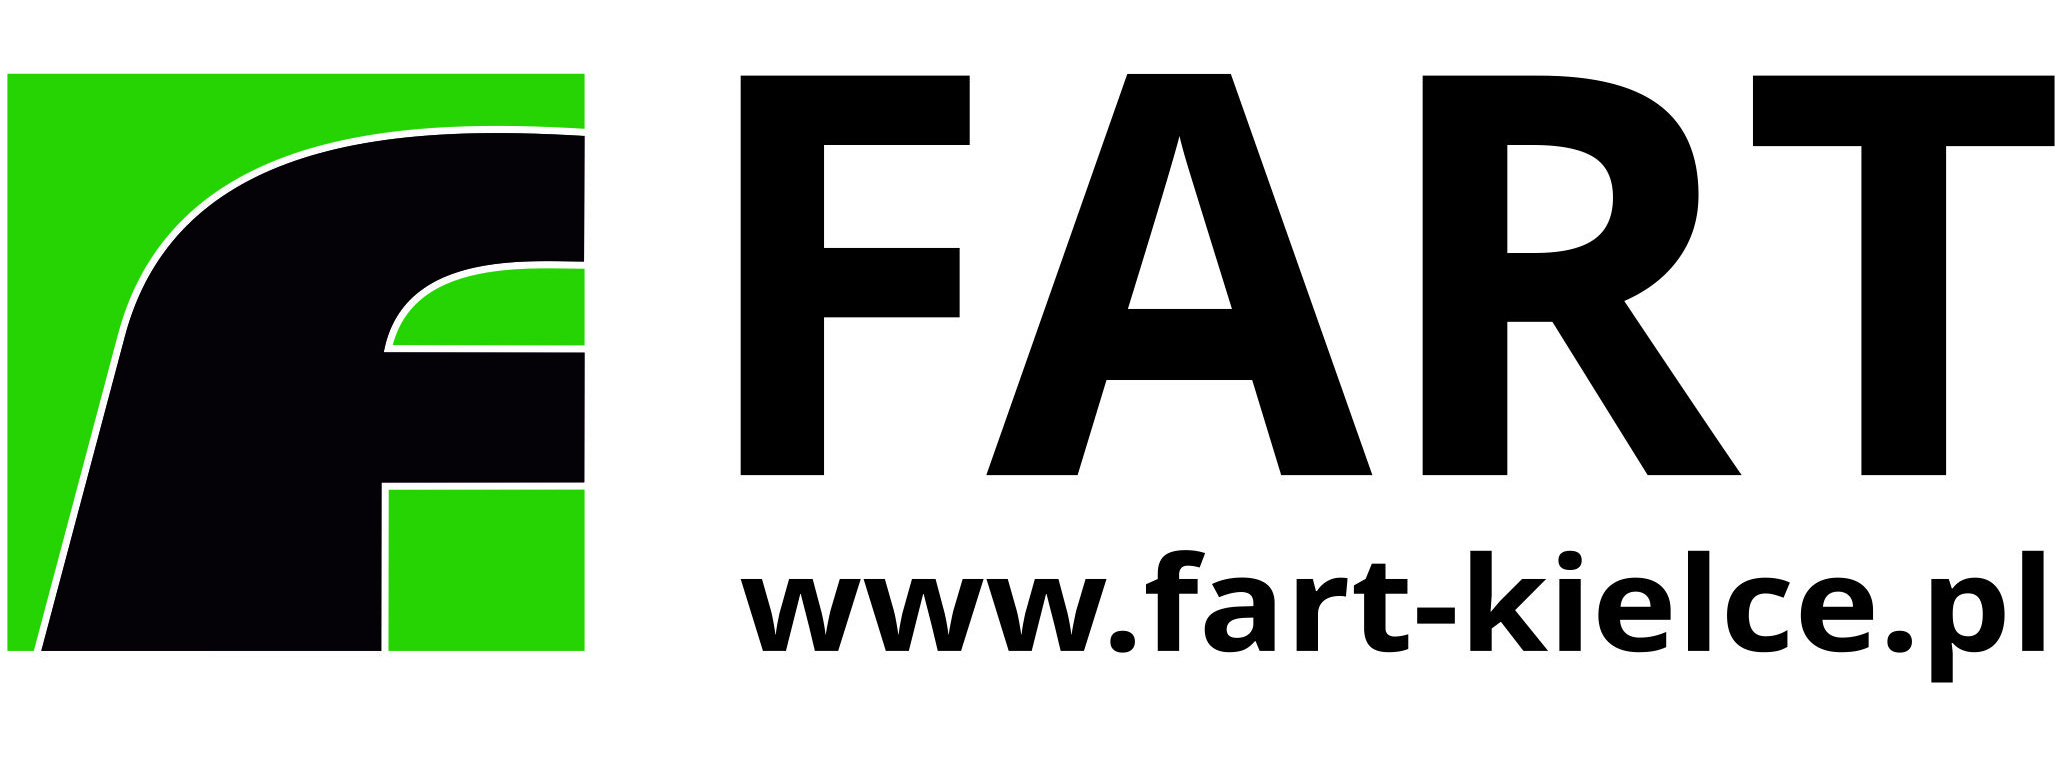 077fart_logo.jpg